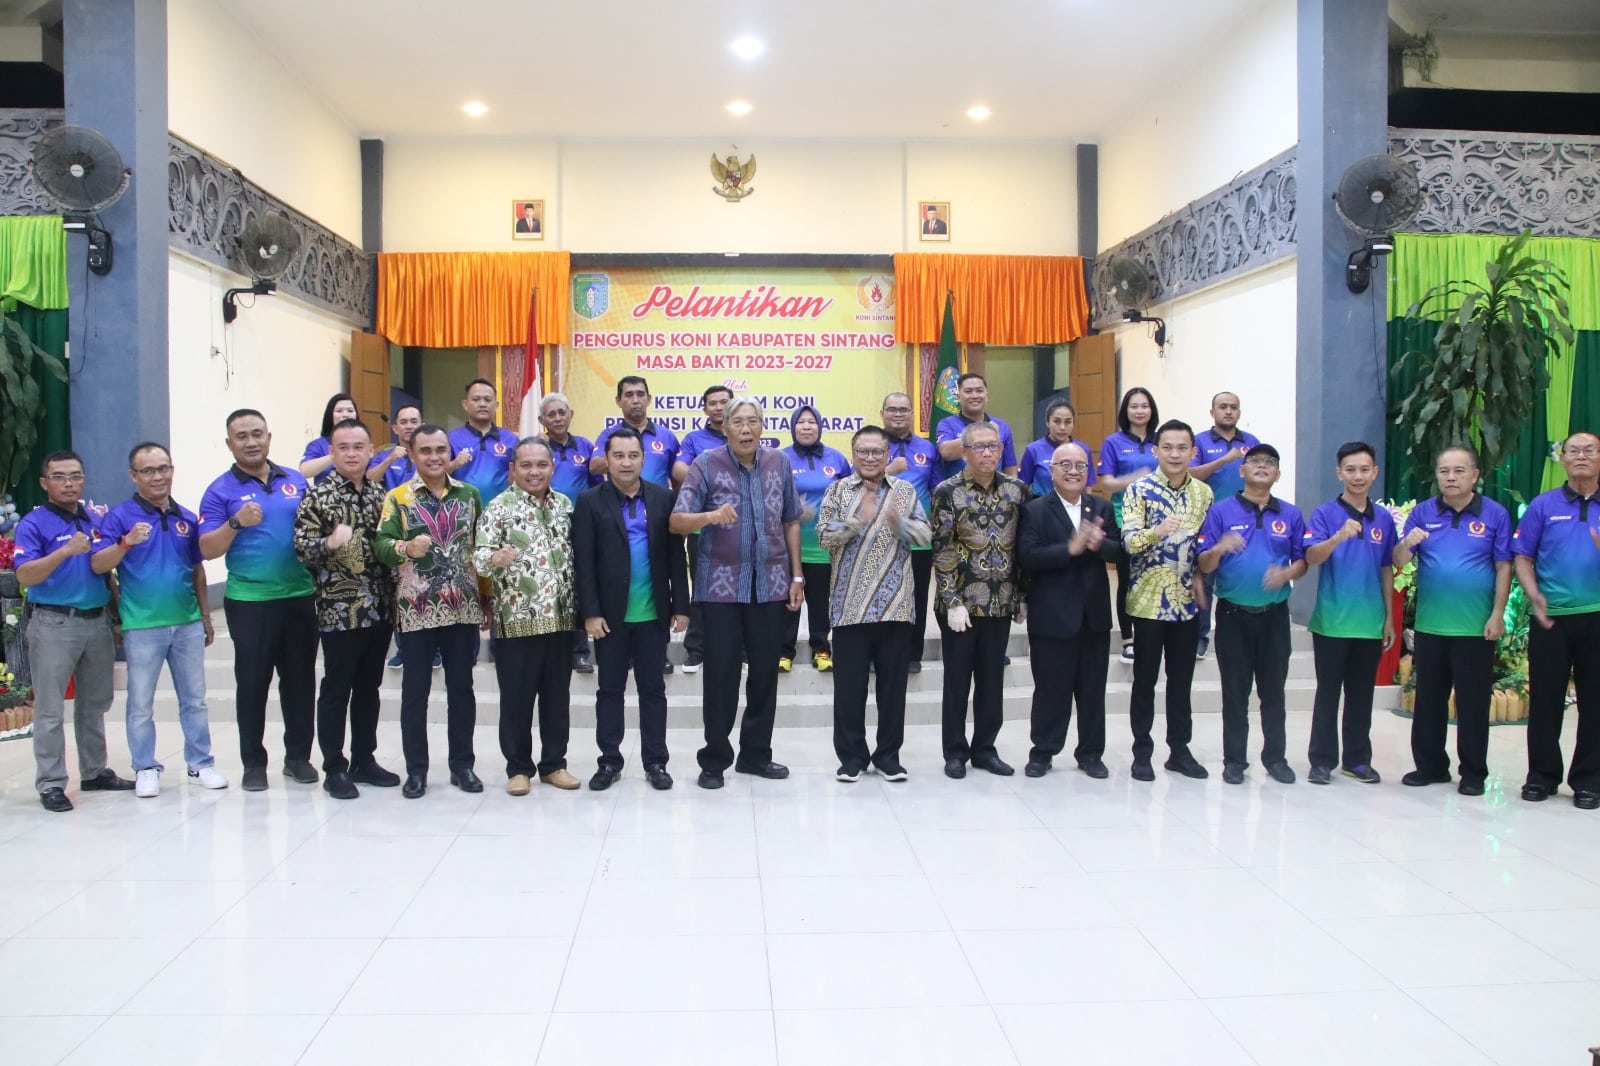 Gubernur Kalimantan Barat, Sutarmidji foto bersama dalam acara pelantikan pengurus KONI Kabupaten Sintang masa bakti 2023 - 2027, di Pendopo Bupati Sintang, Jumat (11/08/2023) malam. (Foto: Jauhari)